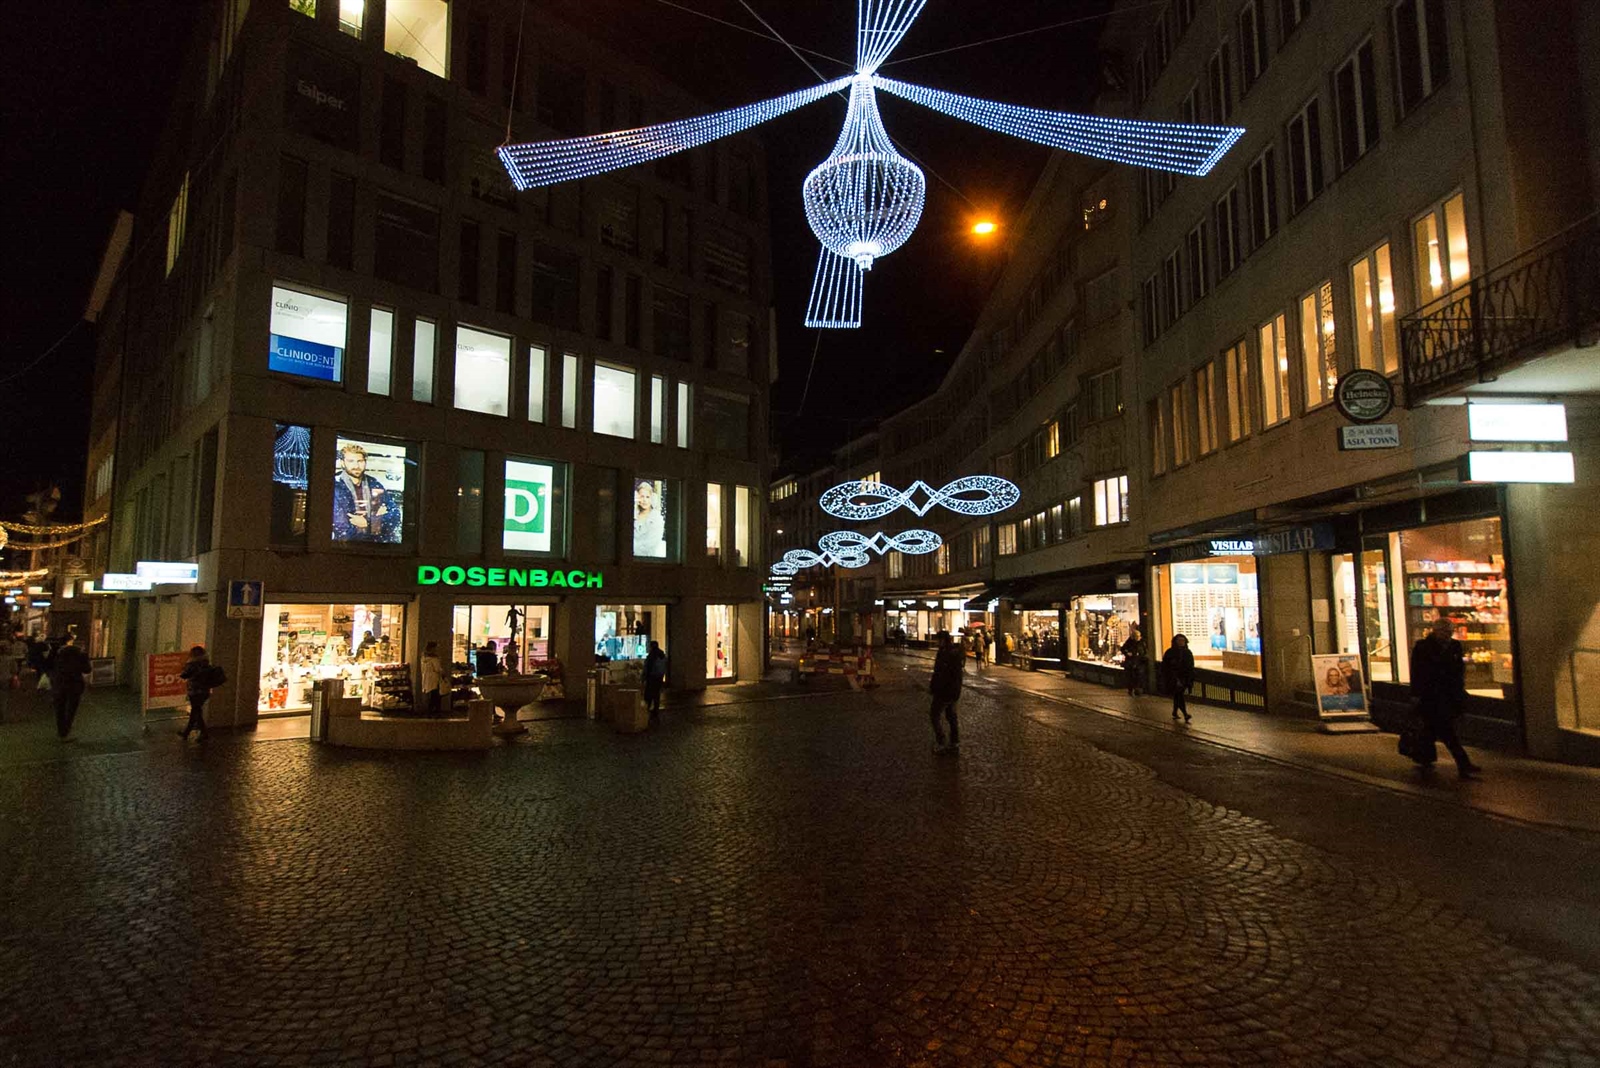 neue Luzerner Weihnachtsbeleuchtung wurde schon gestohlen?